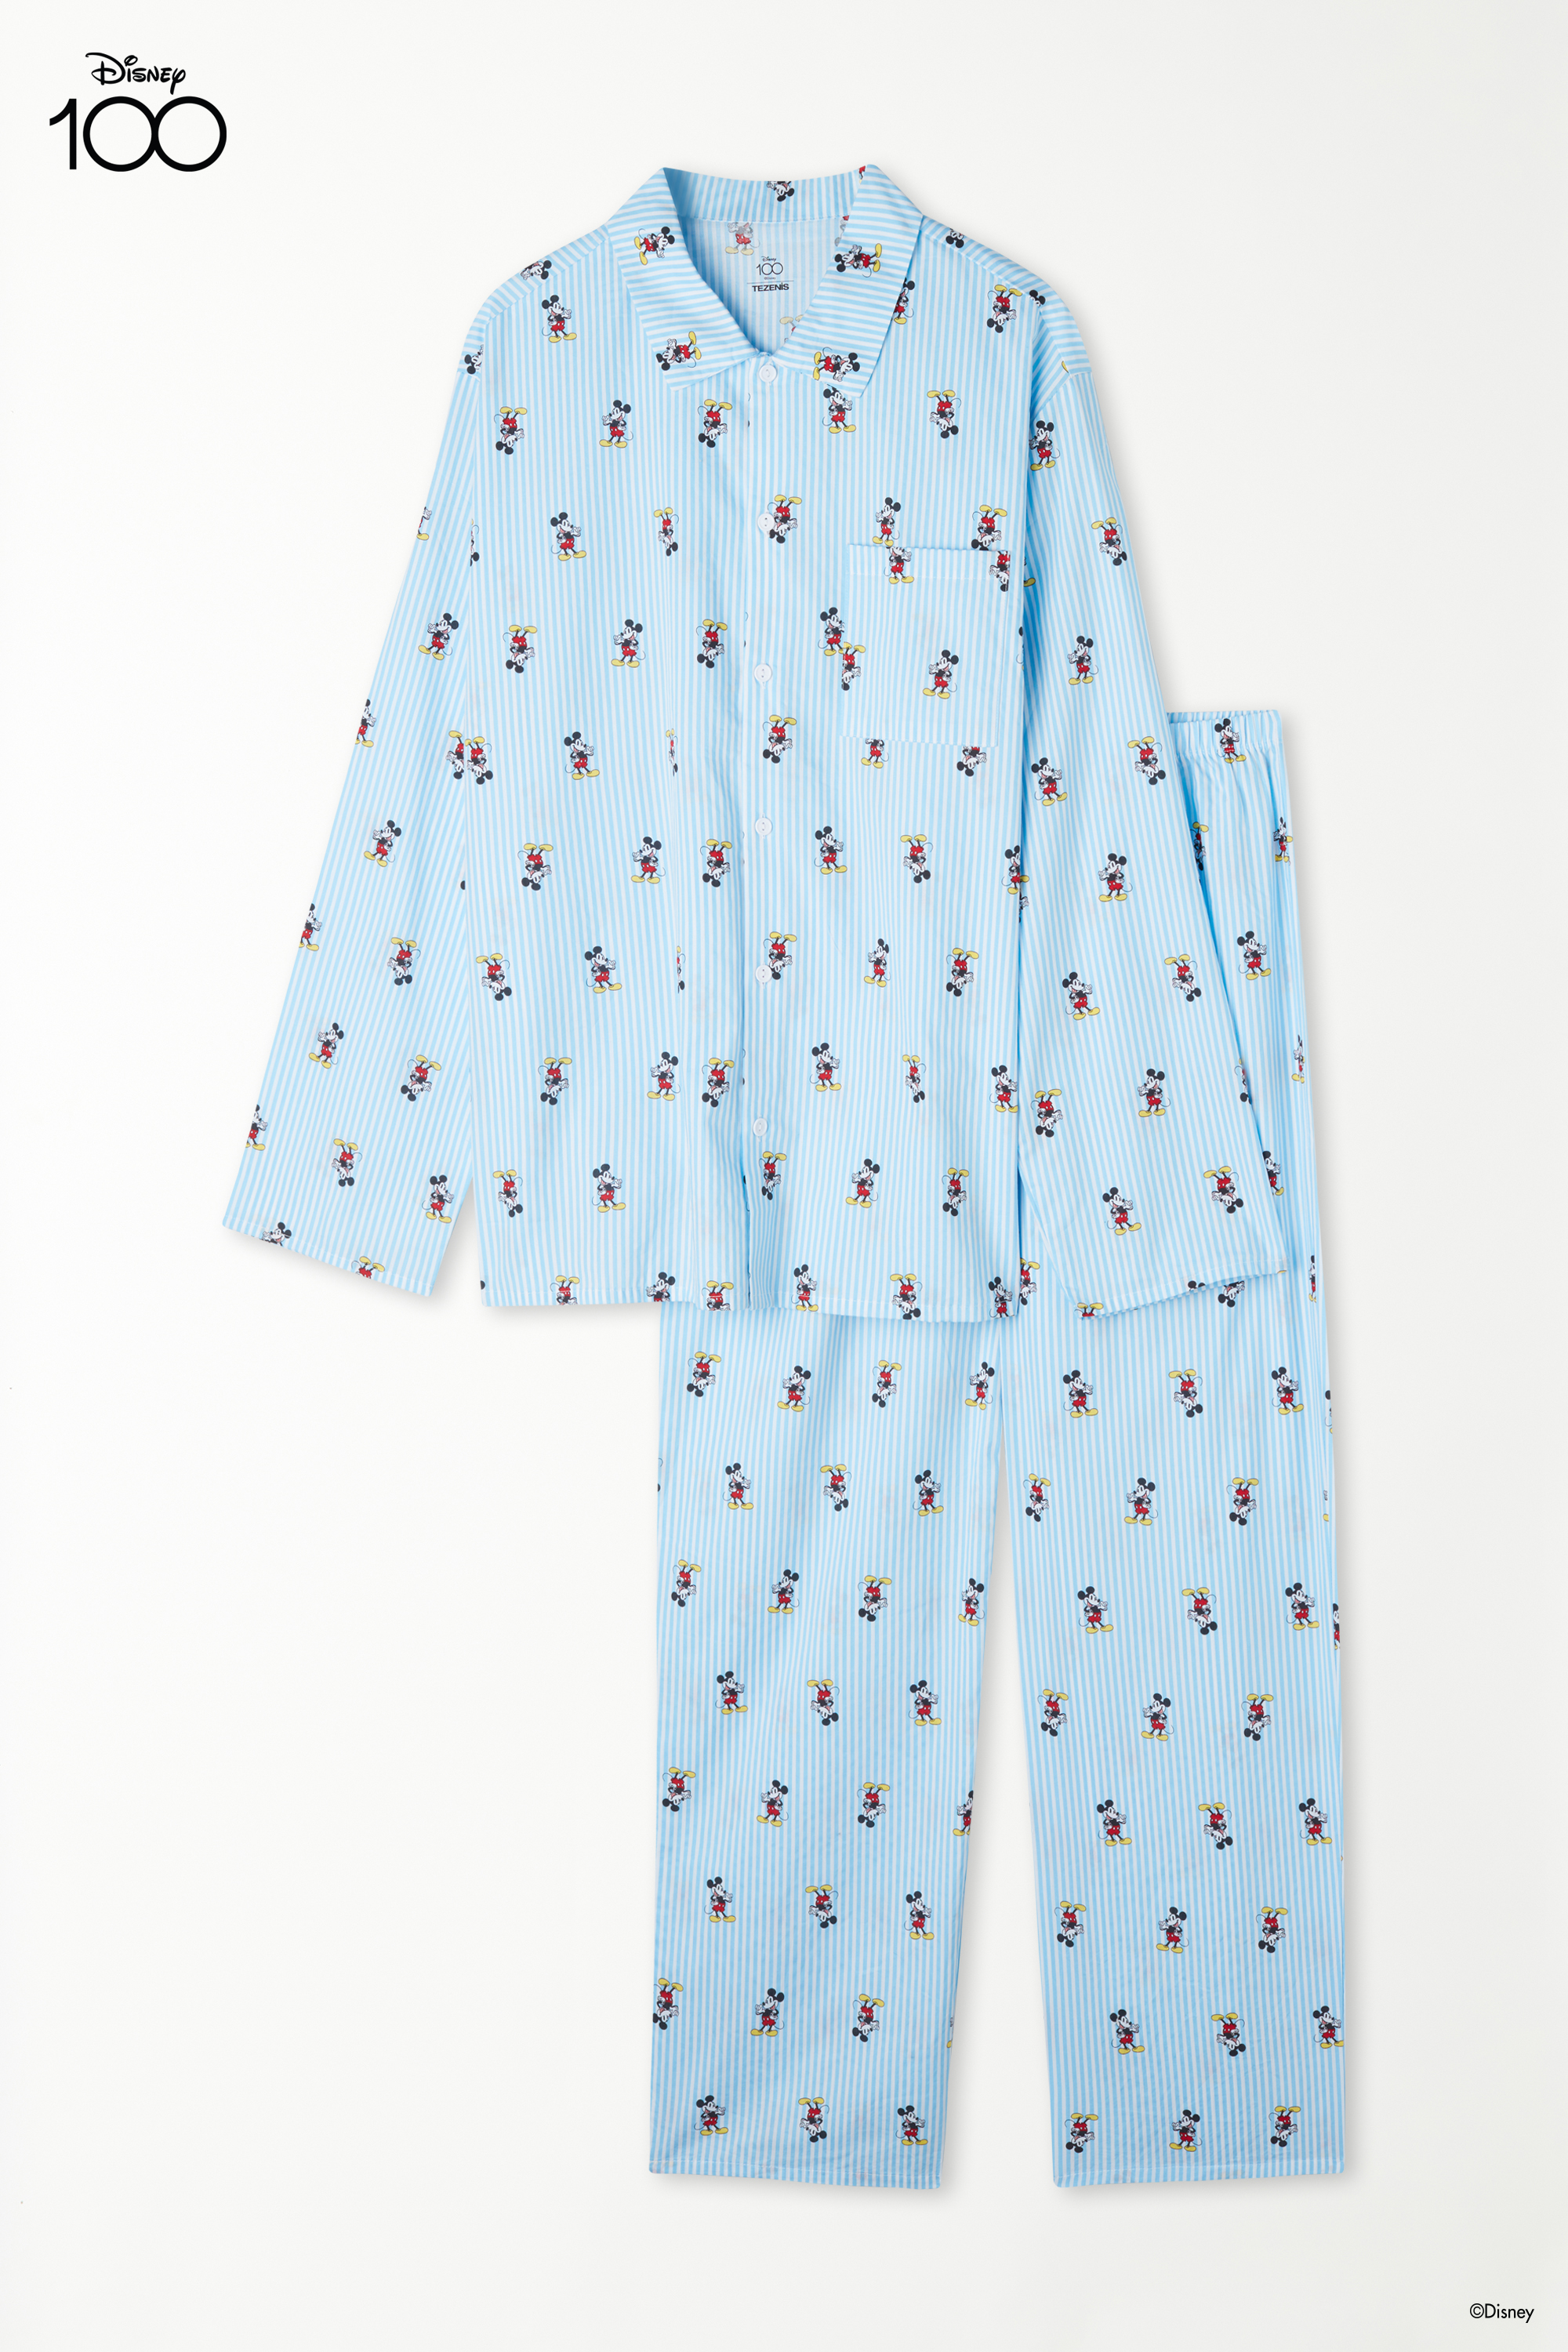 Pijama Comprido Aberto Tecido Algodão Estampado Disney 100